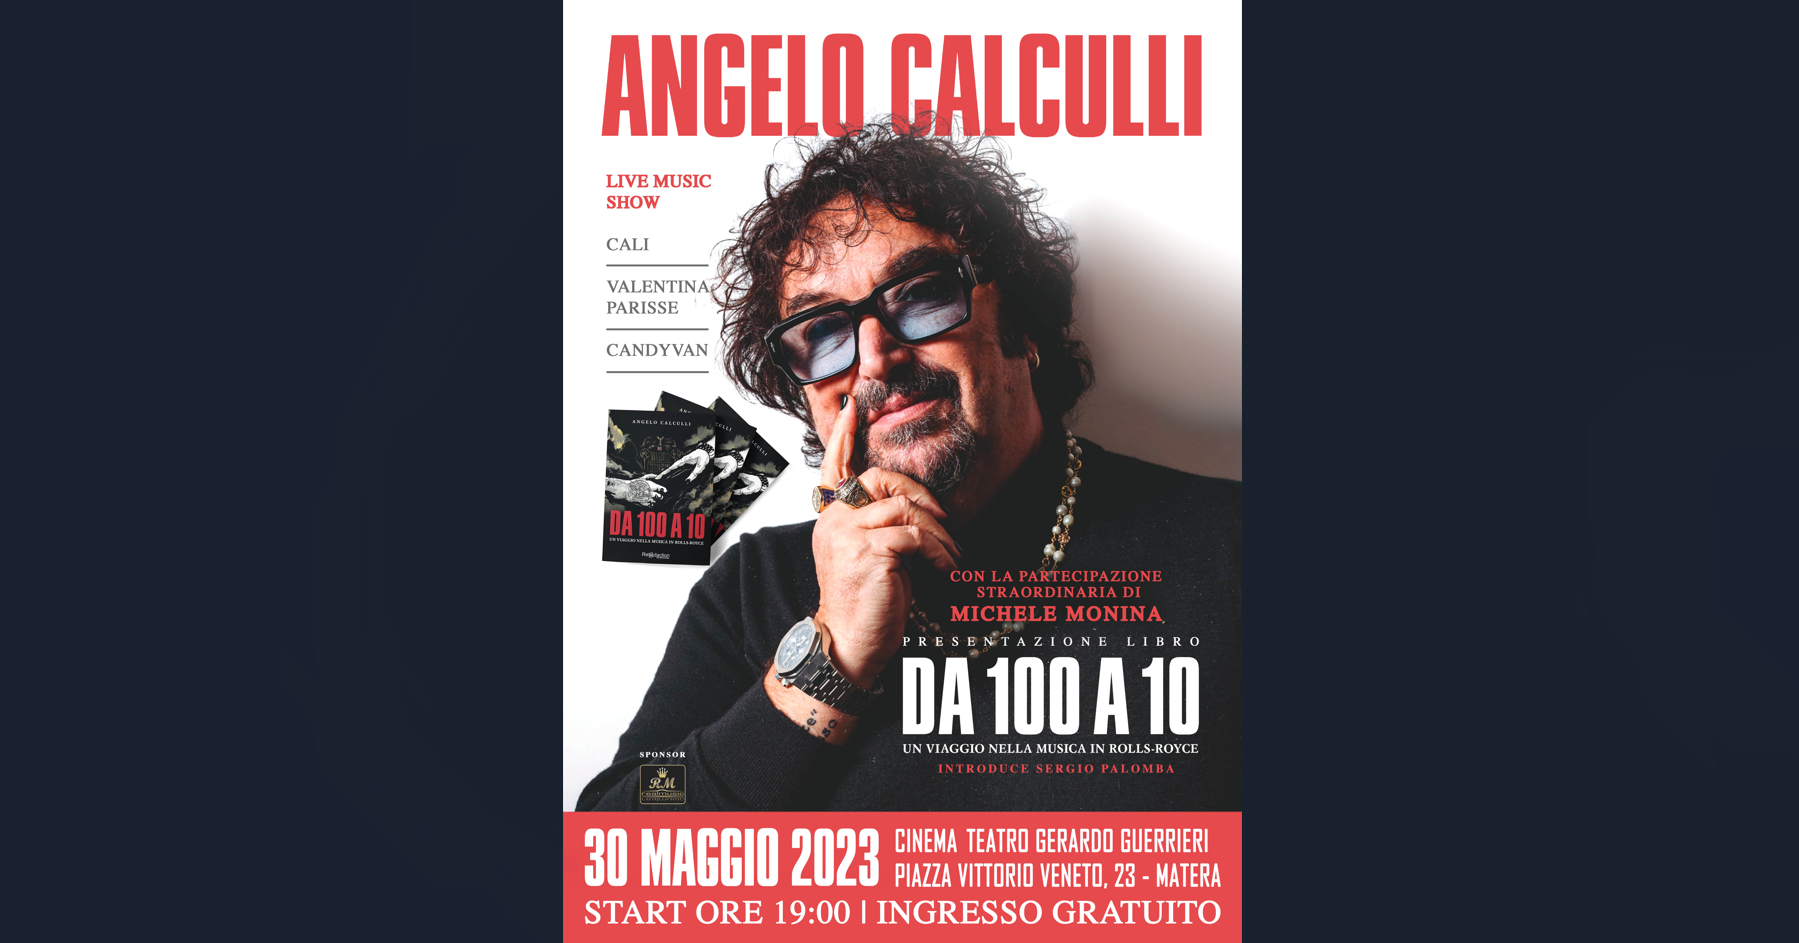 Angelo Calculli, artefice del successo di Achille Lauro, presenta  “Da 100 a 10. Un viaggio nella musica in Rolls-Royce” il 30 maggio a Matera